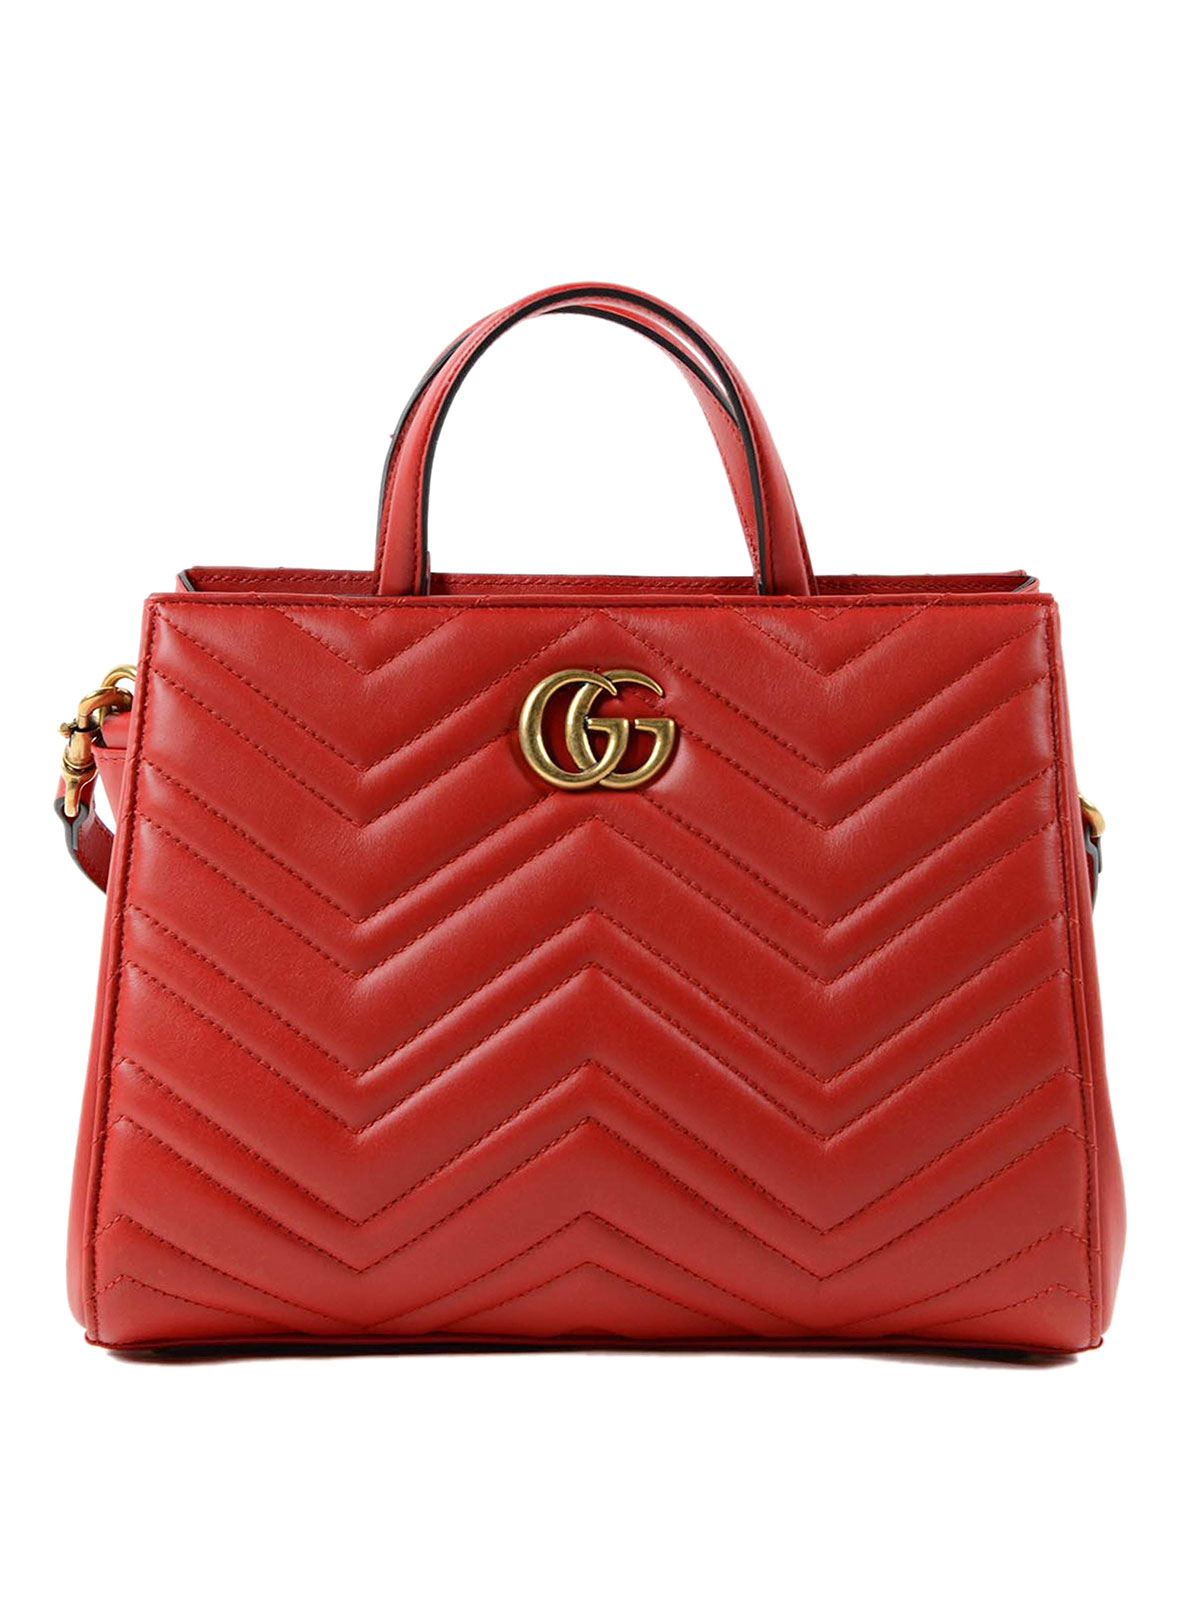 Gucci - GG Marmont matelassé small handbag - totes bags - 448054 DTD1T 6433